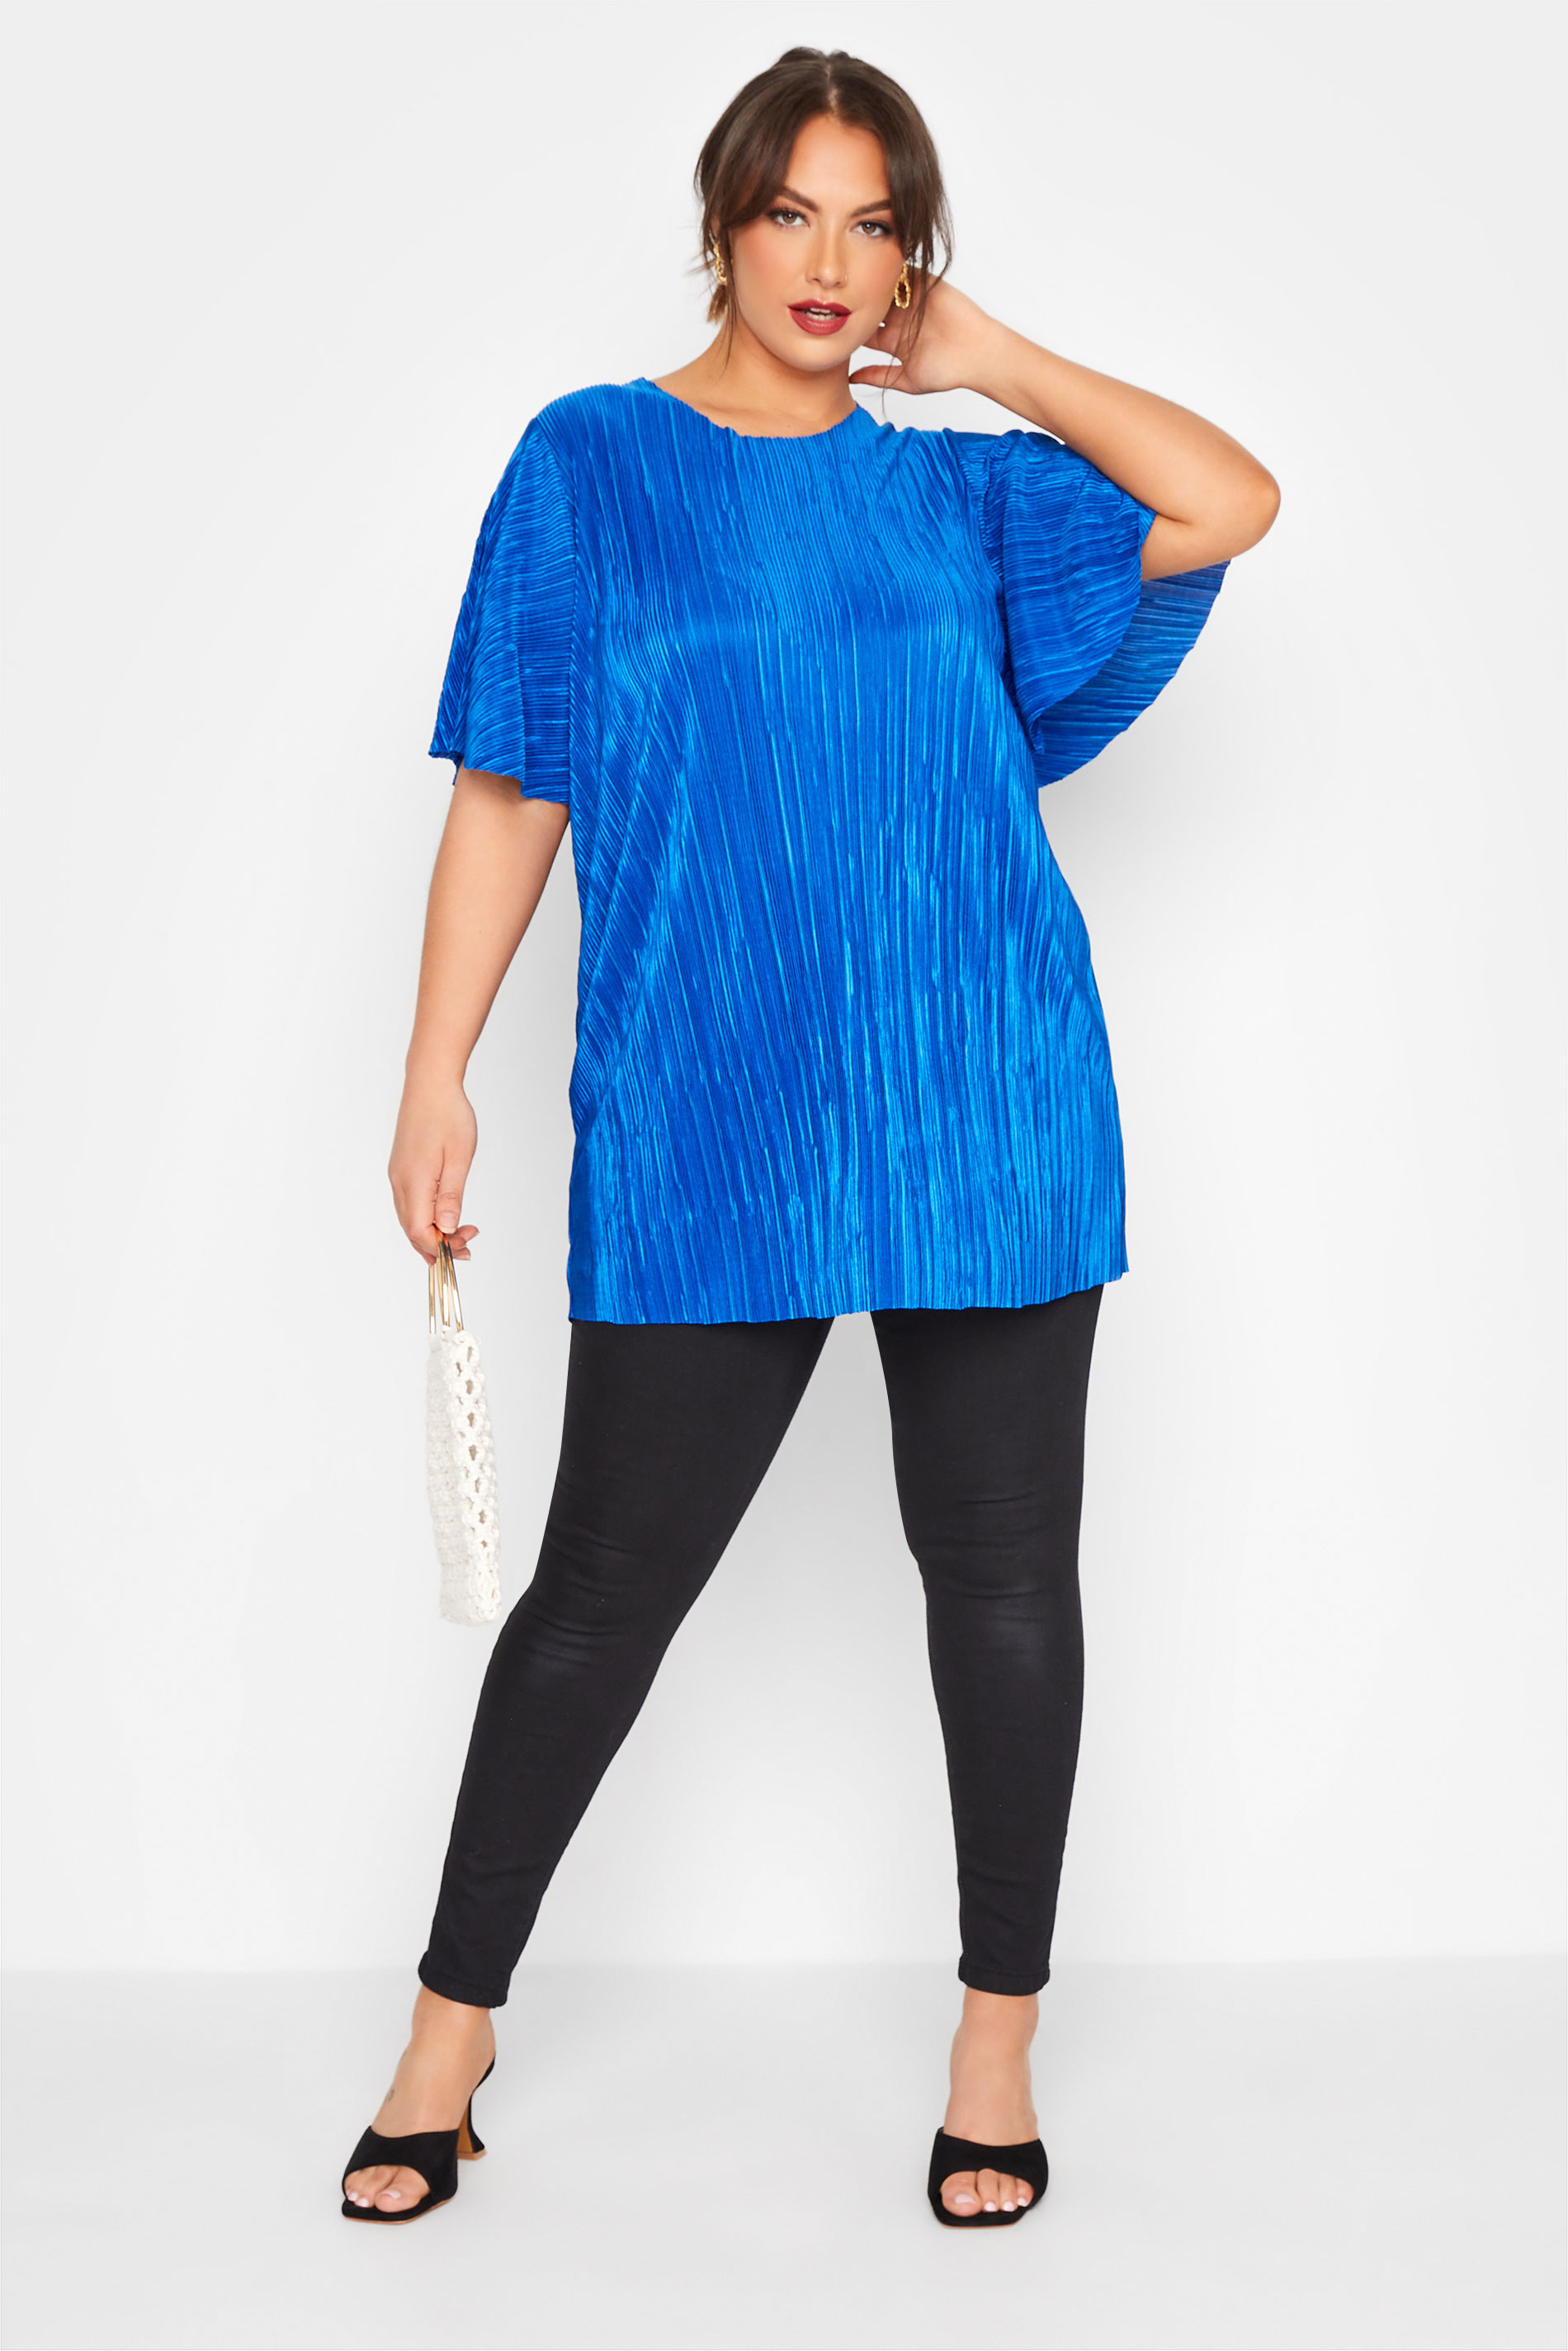 Grande taille  Tops Grande taille  Tops de Soirée | LIMITED COLLECTION - T-Shirt Bleu Roi Ample Texture Plissée - IF79231